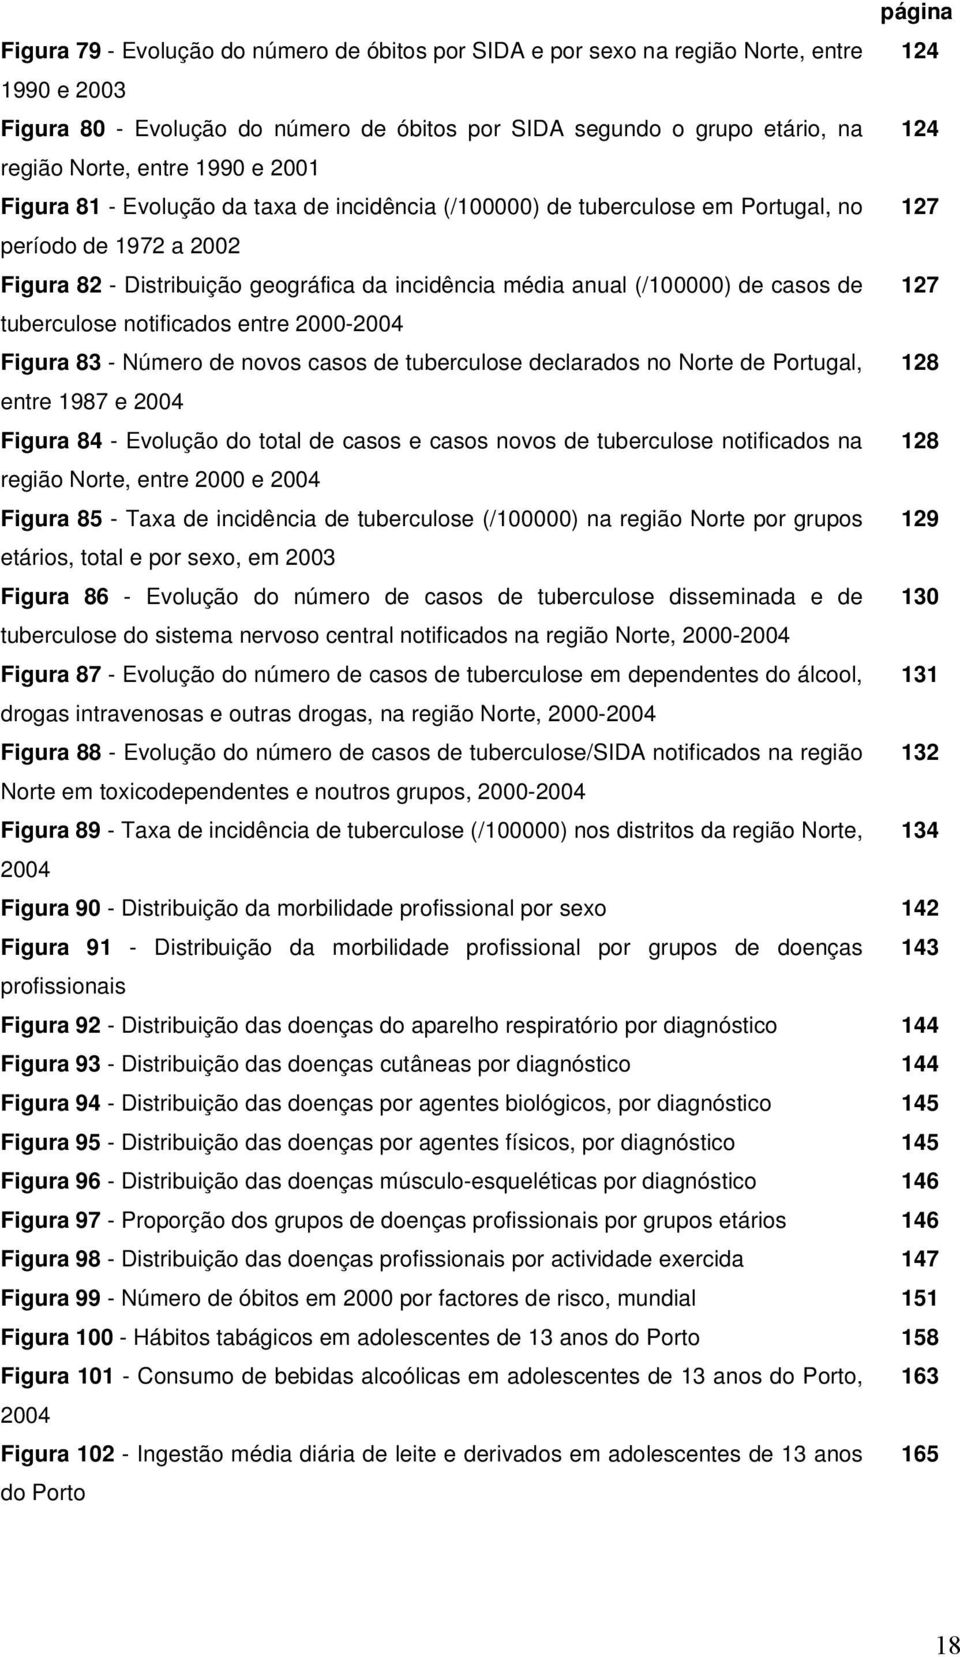 (/100000) de casos de 127 tuberculose notificados entre 2000-2004 Figura 83 - Número de novos casos de tuberculose declarados no Norte de Portugal, 128 entre 1987 e 2004 Figura 84 - Evolução do total